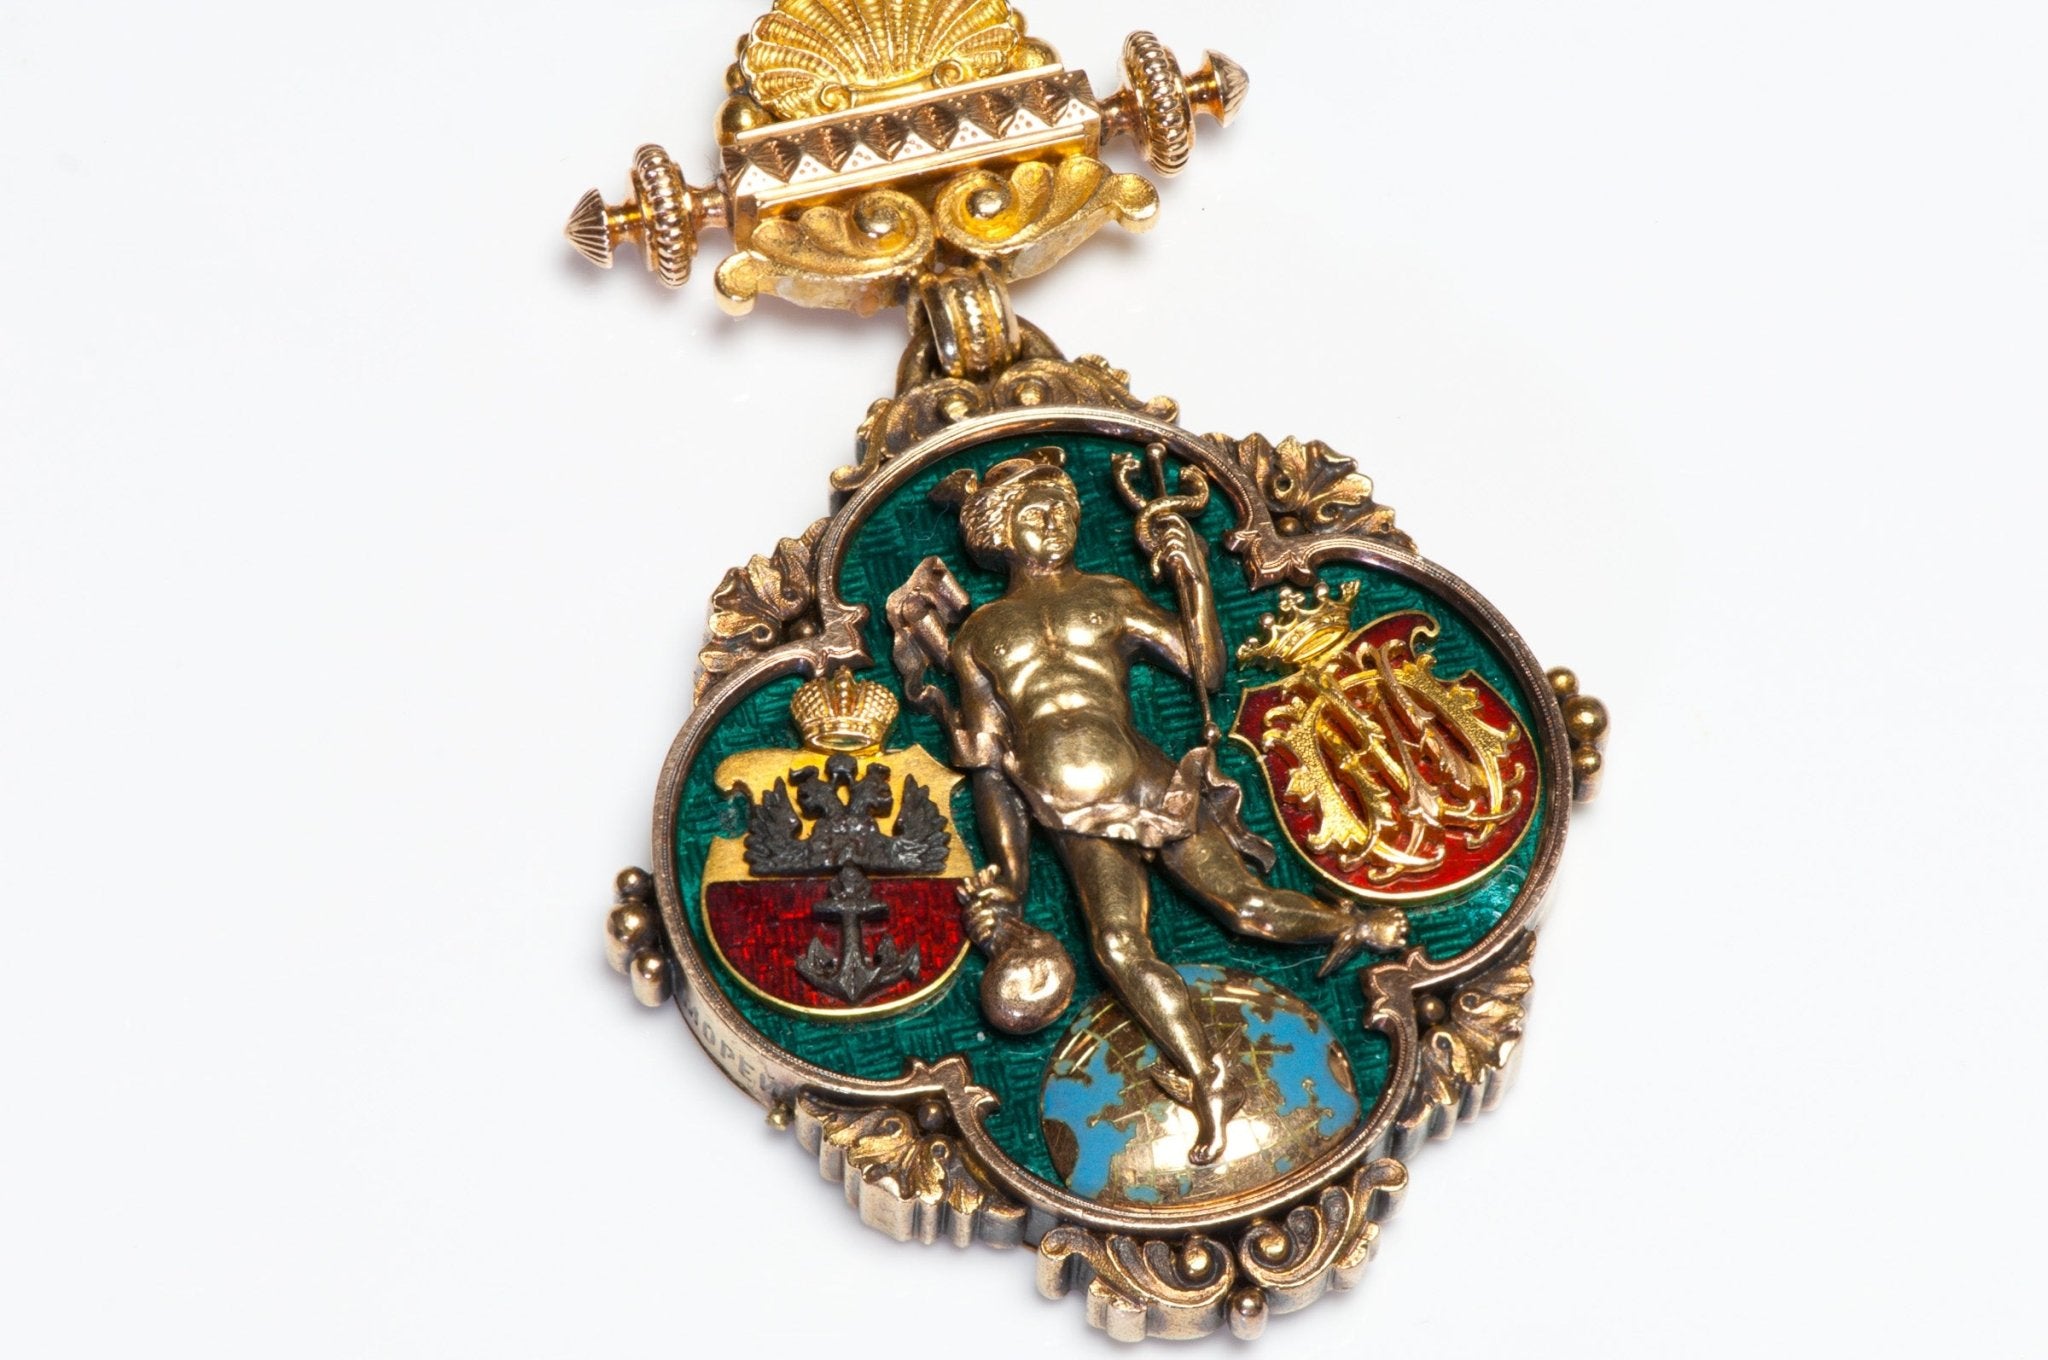 Antique Renaissance Revival Exceptional Gold Enamel Fob